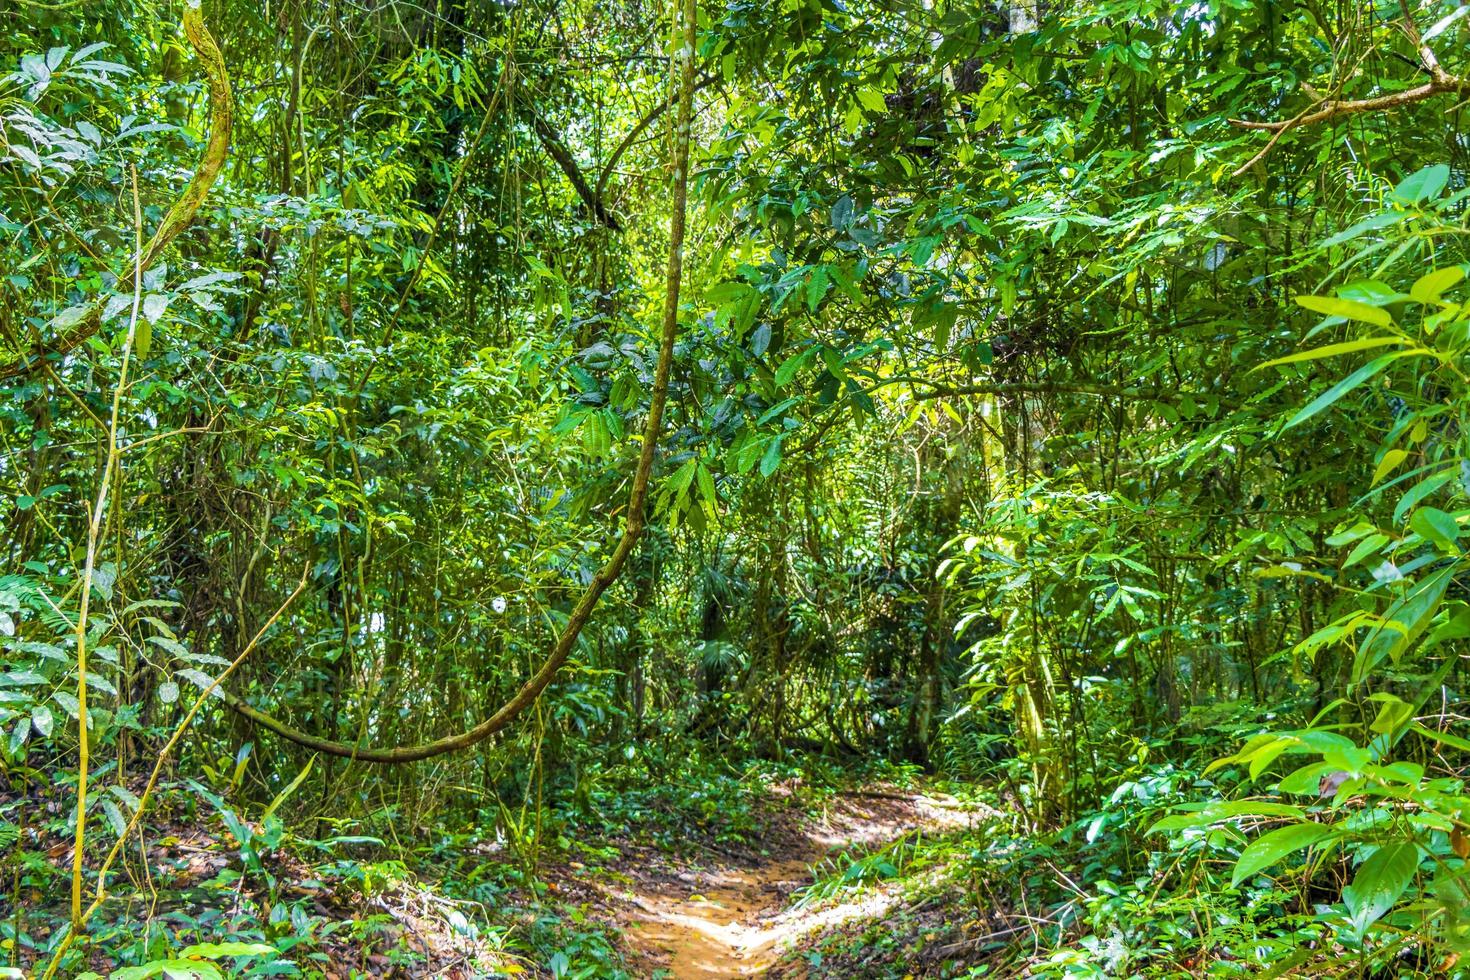 Wanderweg im natürlichen tropischen Dschungelwald Ilha Grande Brasilien. foto